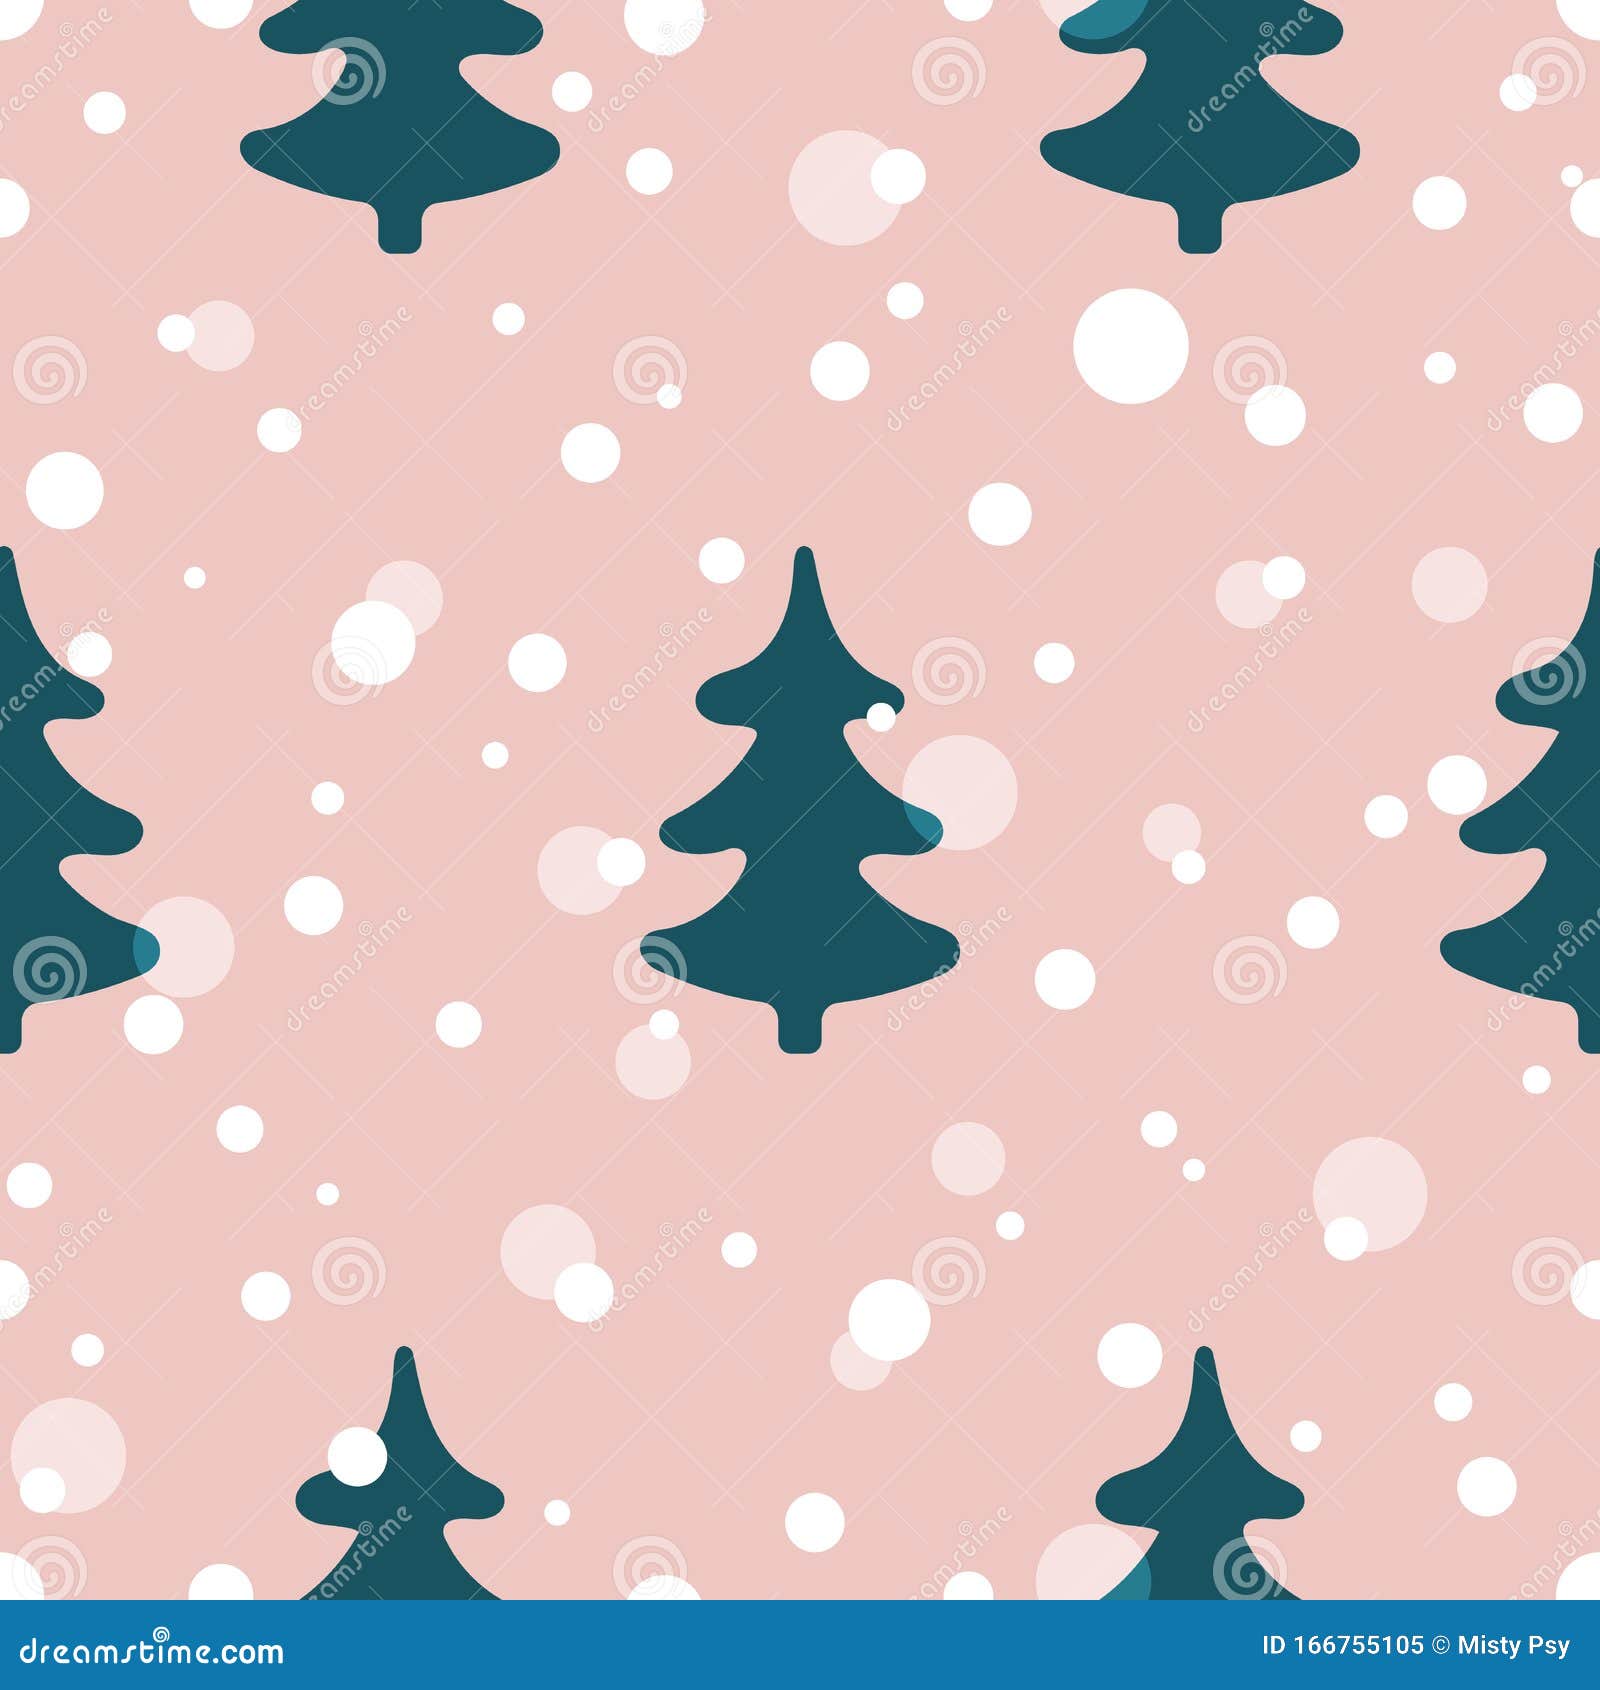 Mẫu vải không chỉ thiết kế tuyệt đẹp, mà còn đem lại không khí Giáng Sinh ấm áp với hình ảnh cây thông Noel sành điệu. Hãy dành chút thời gian để chiêm ngưỡng mẫu vải giúp bạn tưởng tượng về một mùa lễ hội thật tuyệt vời.